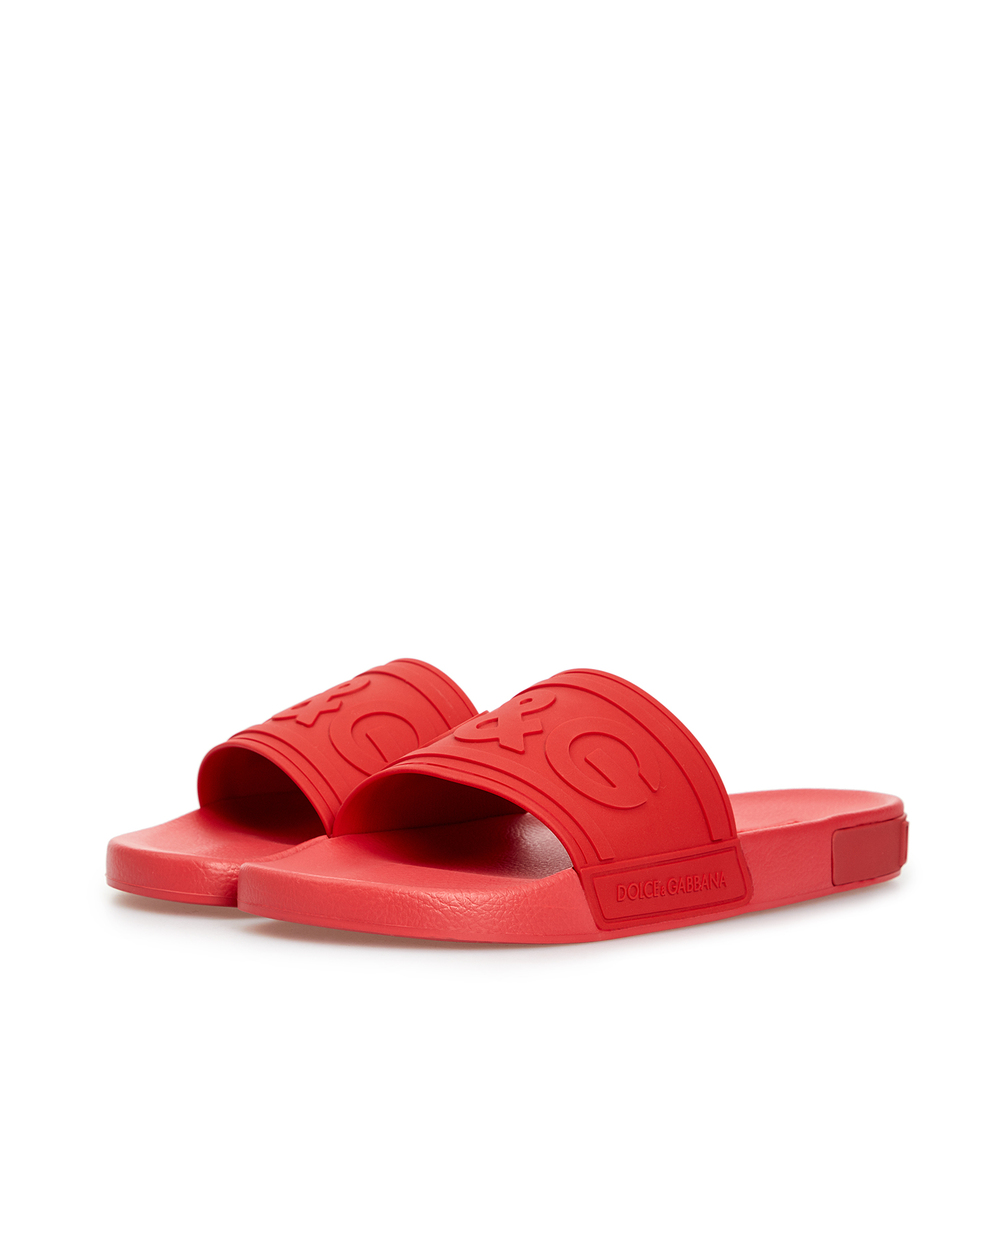 Слайдеры Dolce&Gabbana CS1786-AX389, красный цвет • Купить в интернет-магазине Kameron